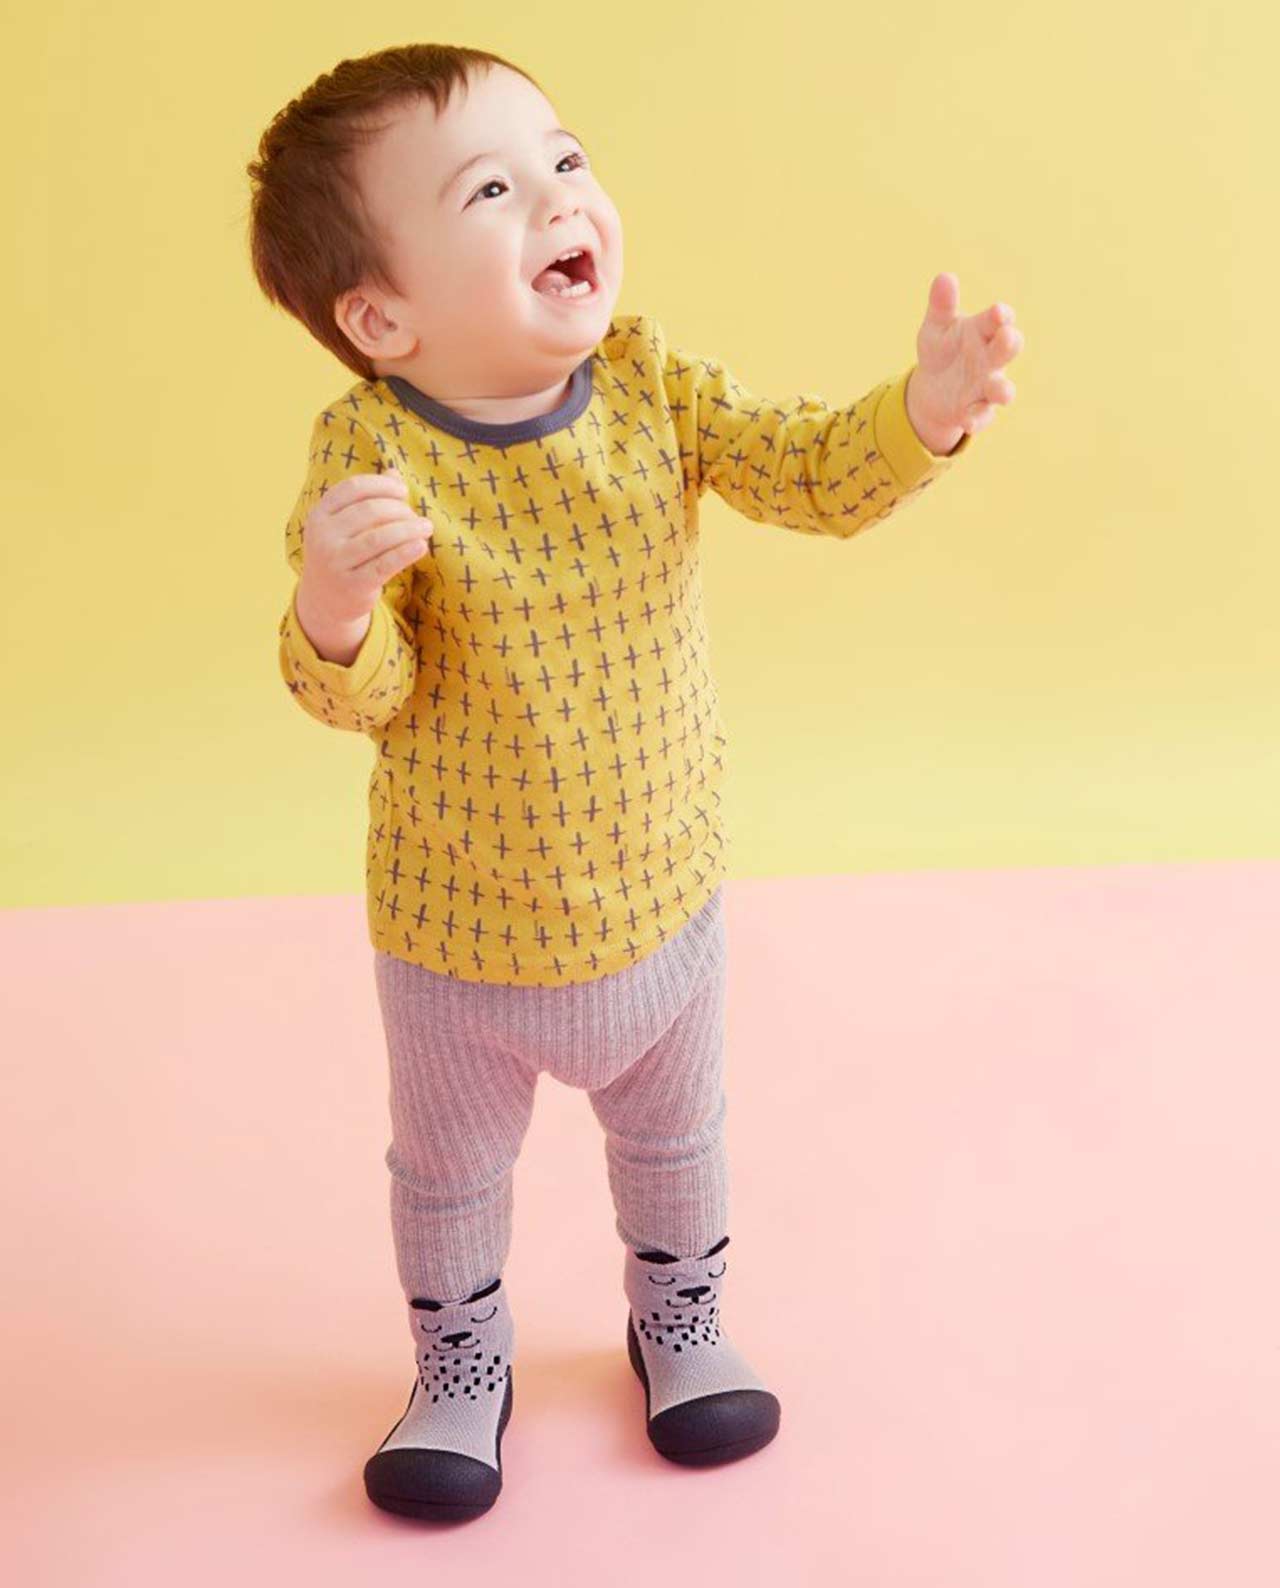 Calzado ergonómico para bebés Attipas Cutie Grey - La Colmena